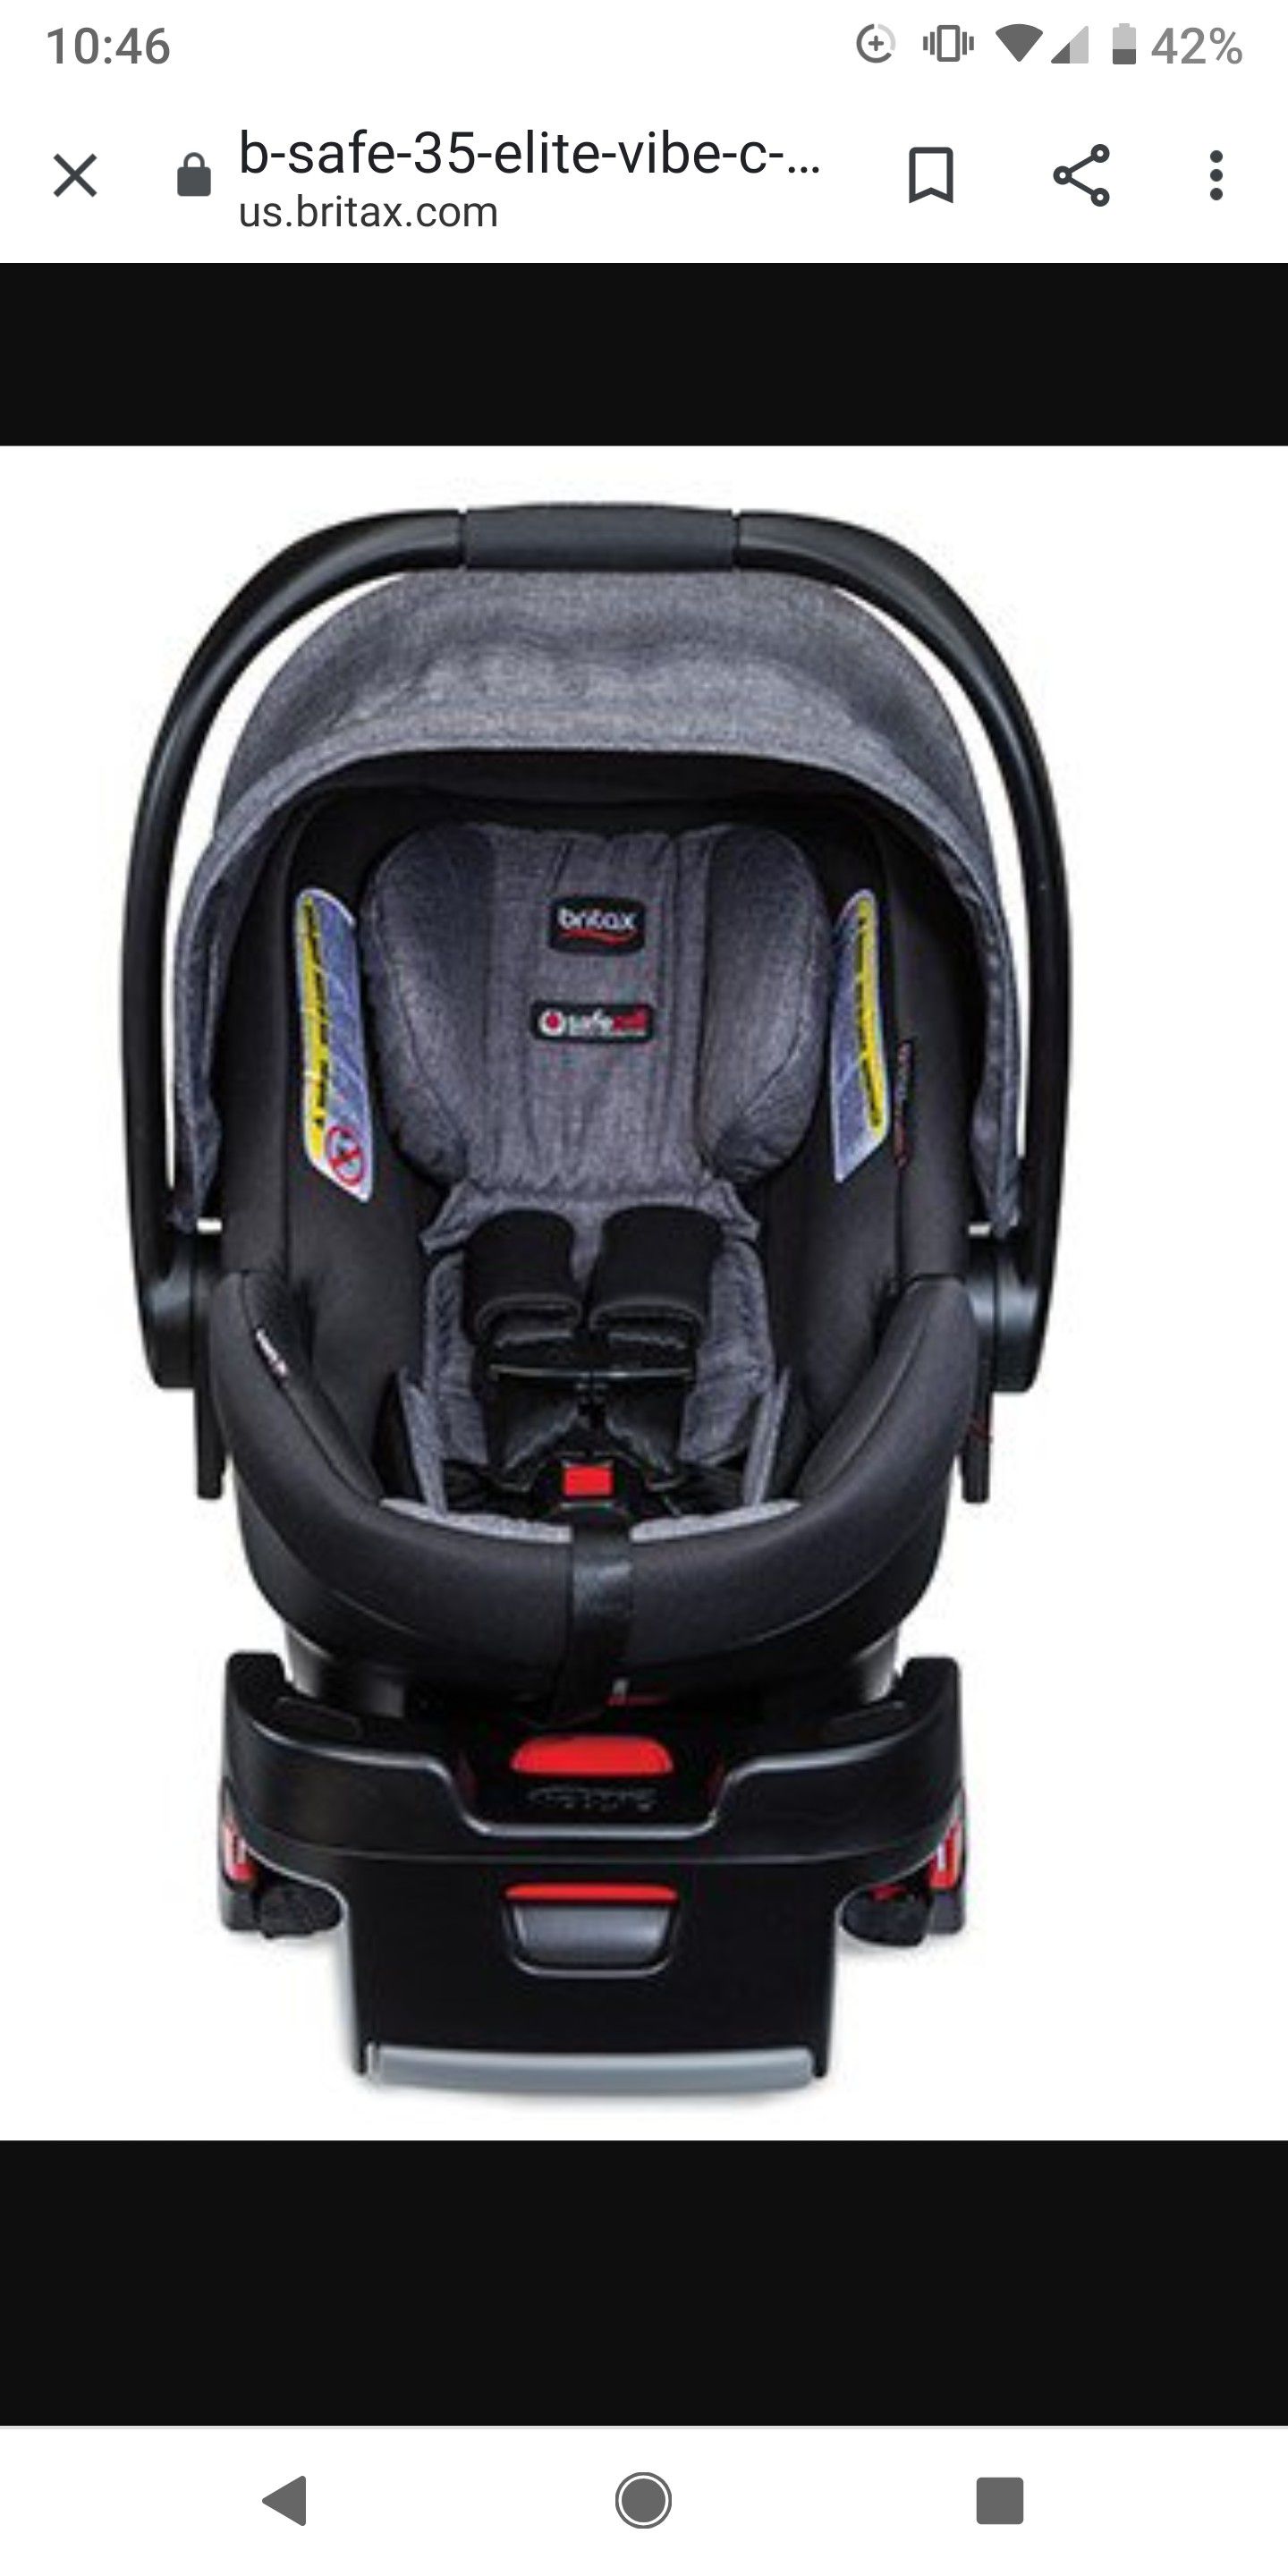 Britax infant carrier car seat b-safe elite